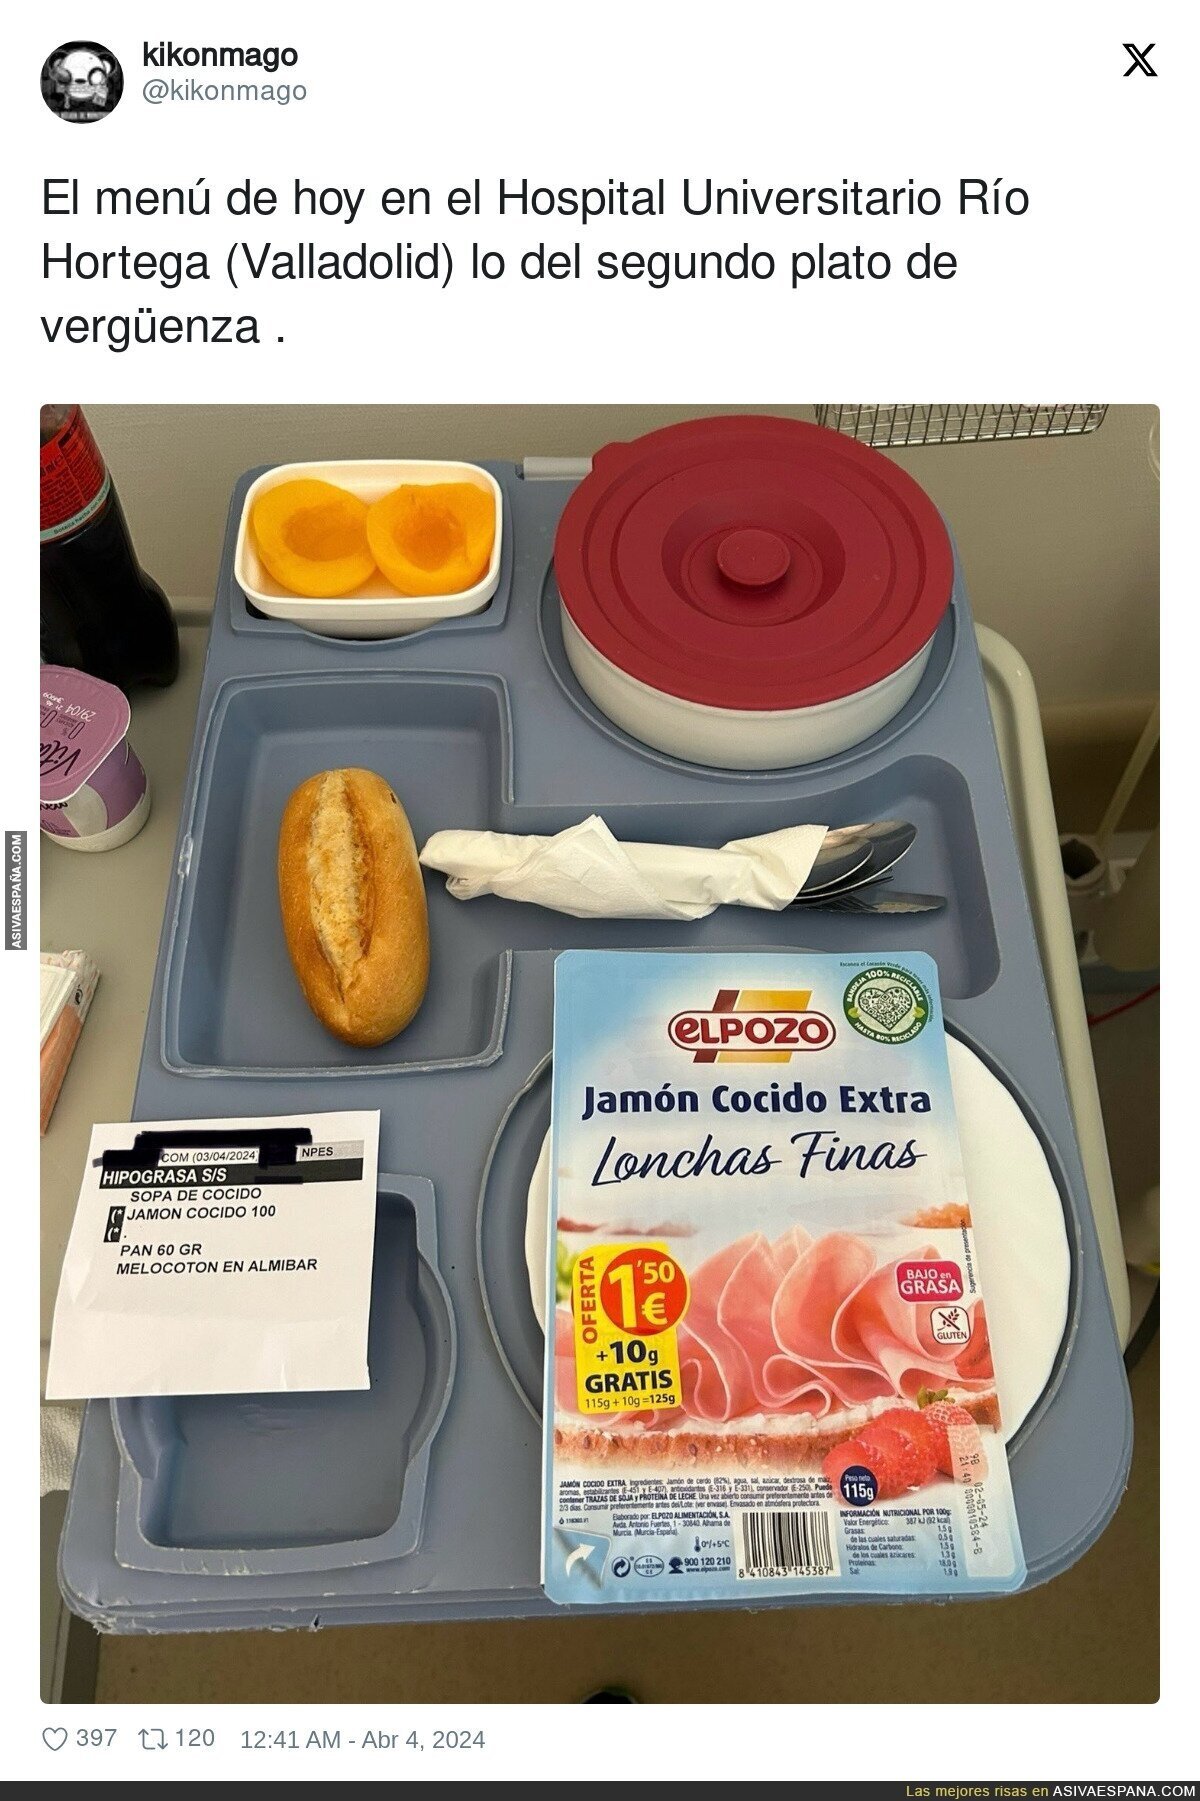 Vergüenza absoluta la comida que le han puesto a esta persona en el Hospital Universitario Río Hortega